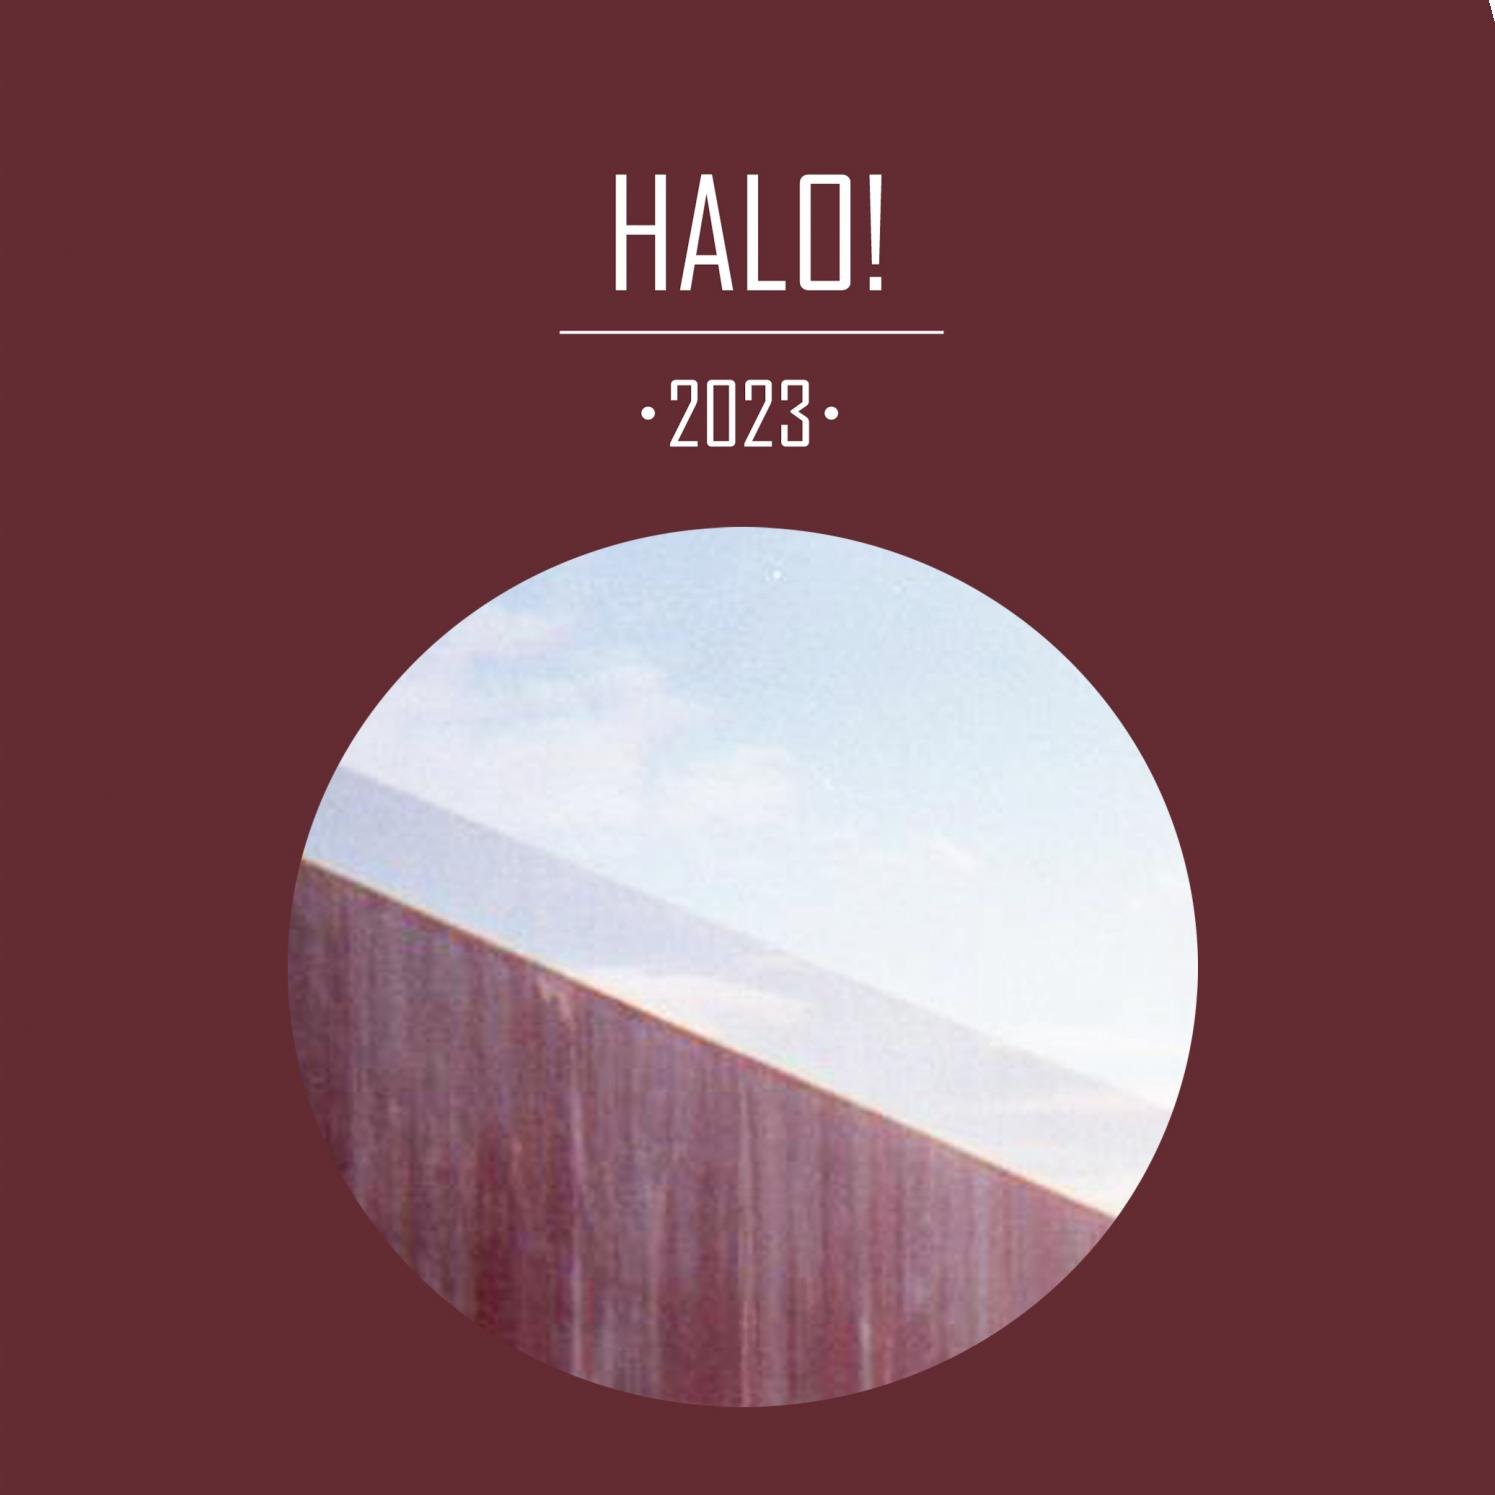 New album 2023. Альбомы 2023. Обложки музыкальных альбомов. Обложка альбома Halo. Обложки музыкальных альбомов 2023.